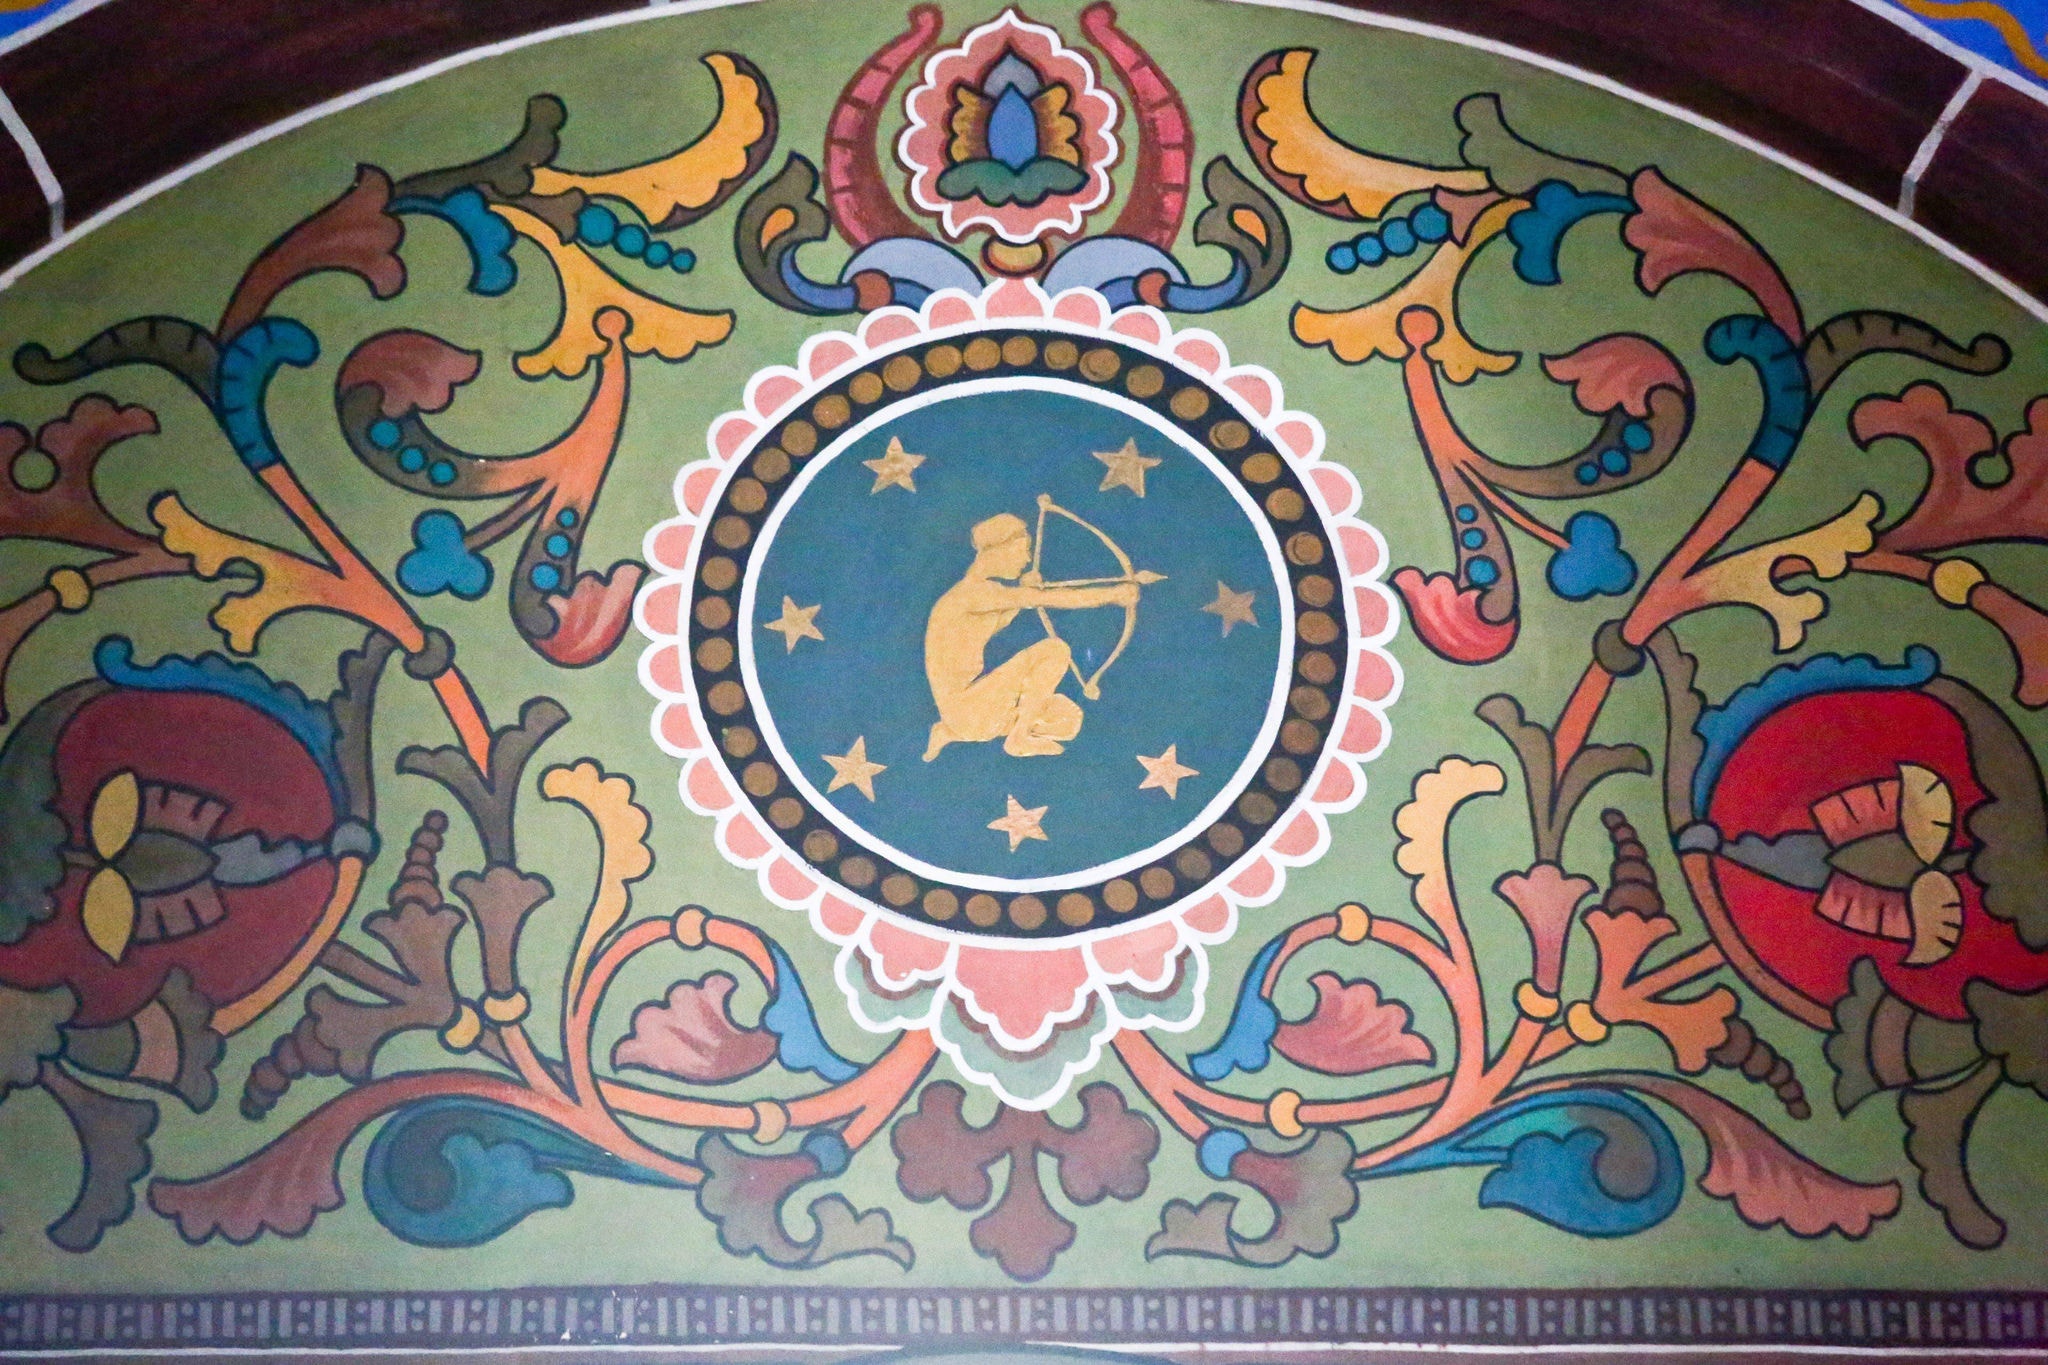 Astronomia - Os 12 signos do zodíaco,representando as constelações, aparecem em meio à pintura interna da igreja 
